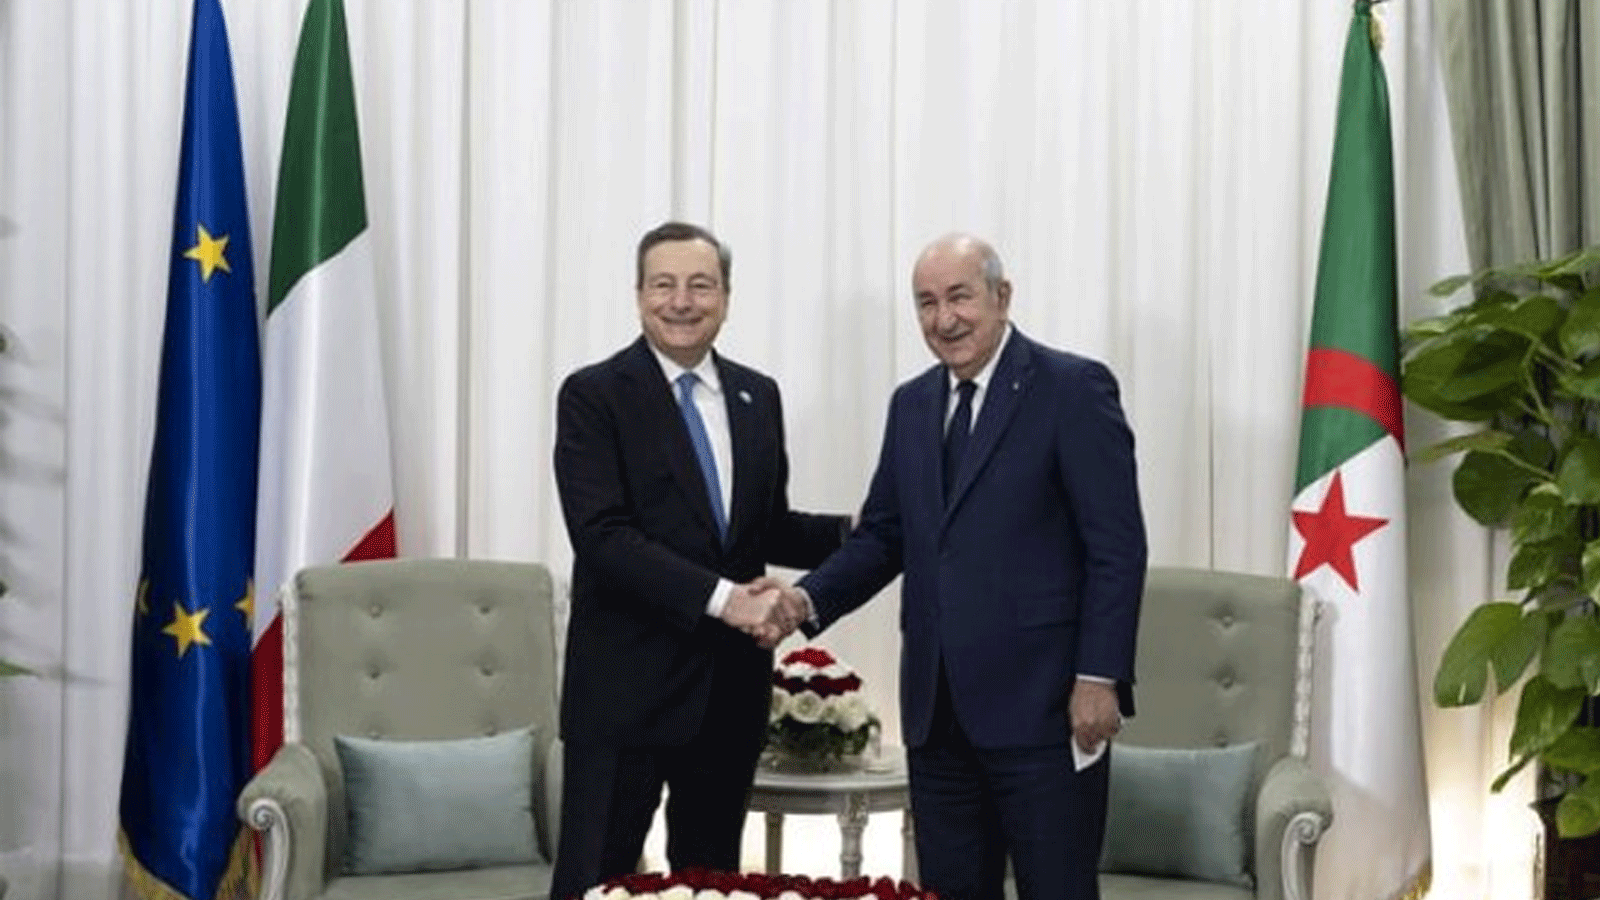 الرئيس الجزائري عبدالمجيد تبون مستقبلاً وزير خارجية إيطاليا ماريو دراغي